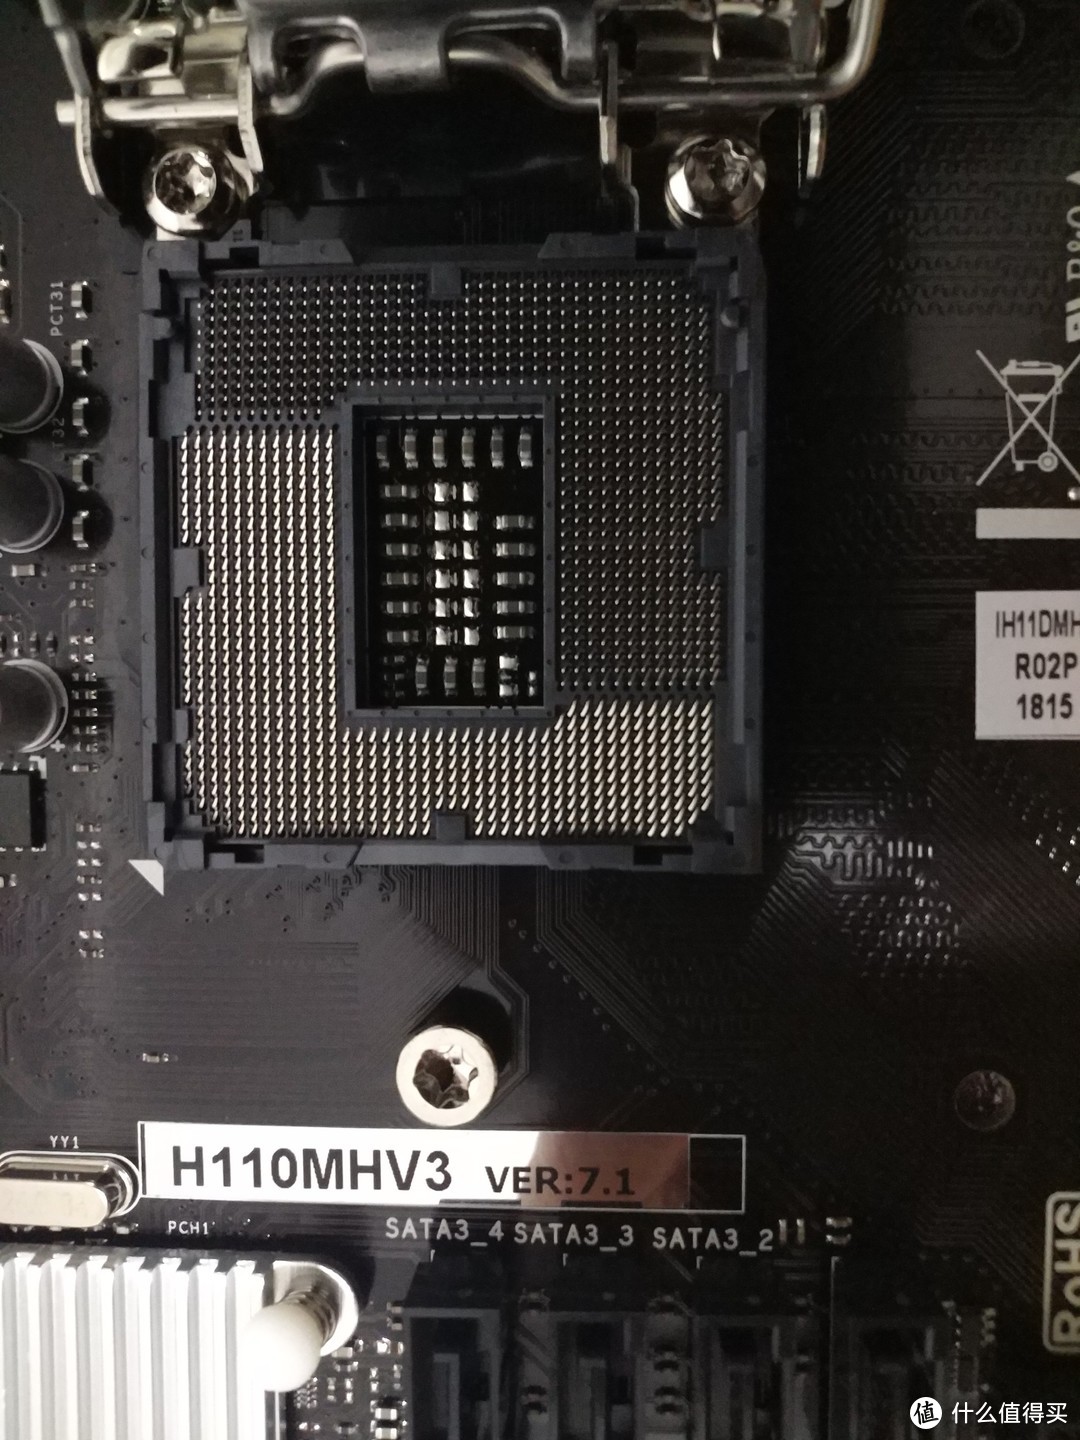 低价格高性能的ITX小主机—英特尔 i3-8100 处理器+映泰 H110MHV3 主板